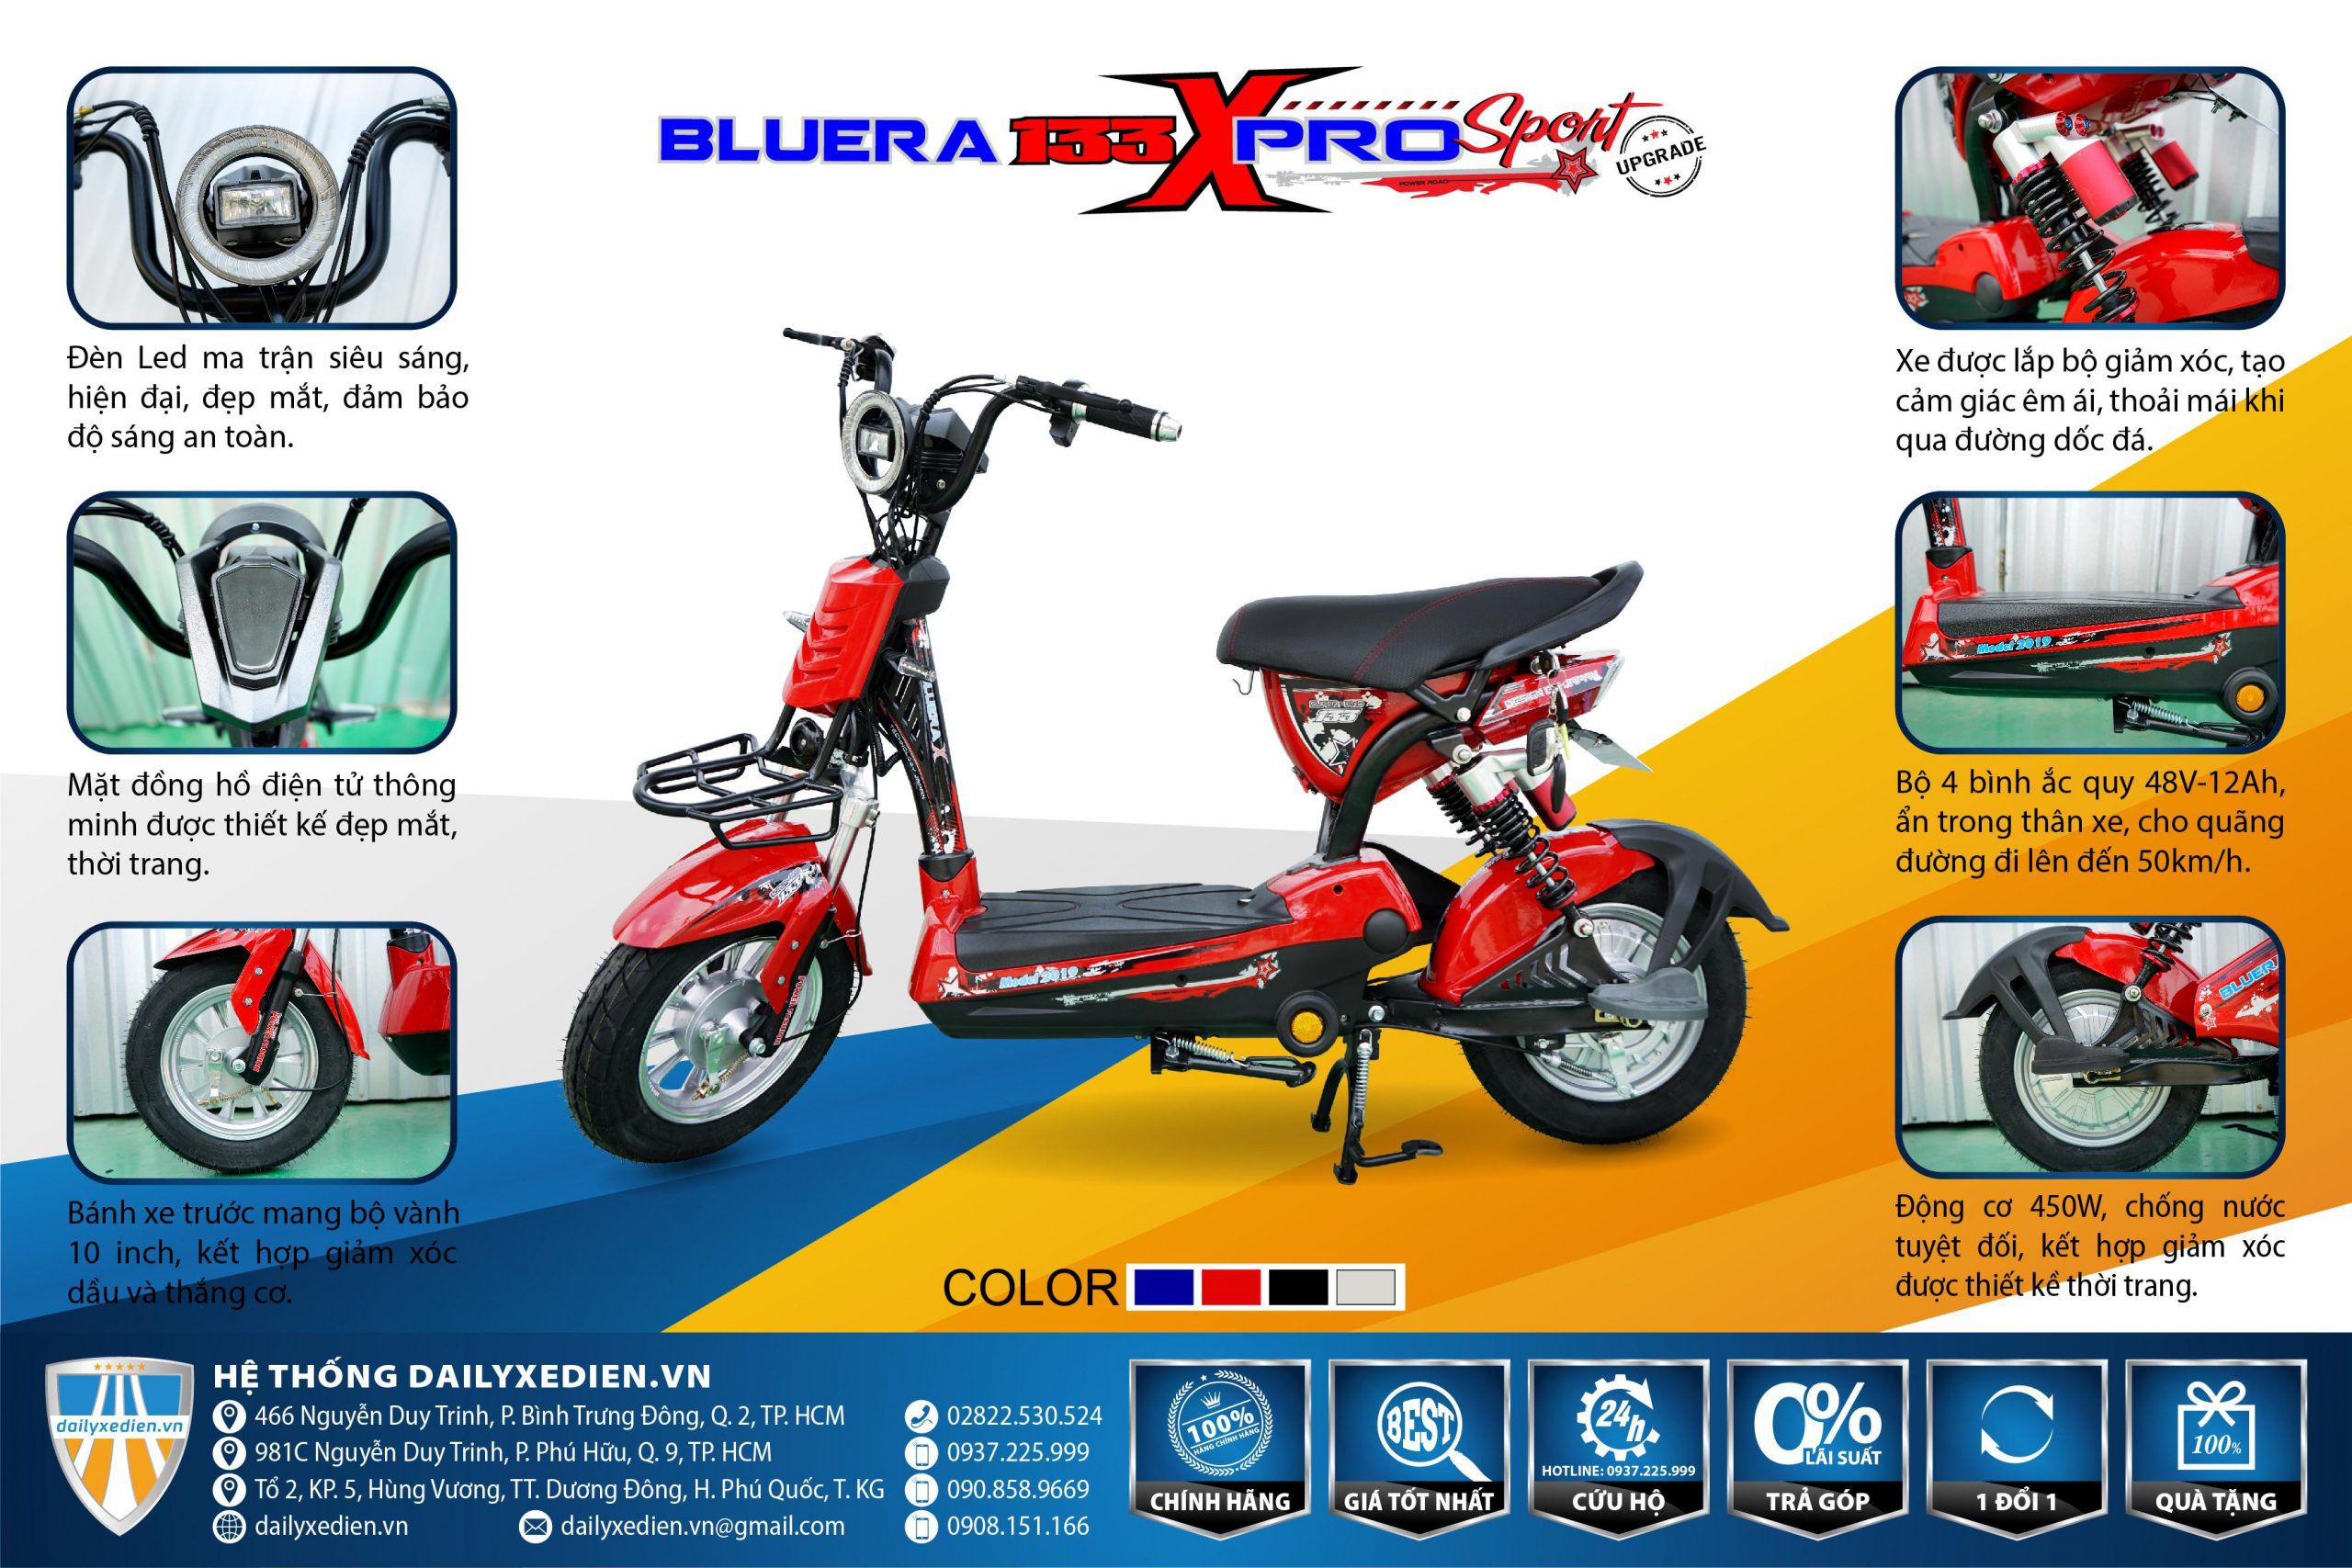 xe đạp điện bluera 133 Xpro Sport